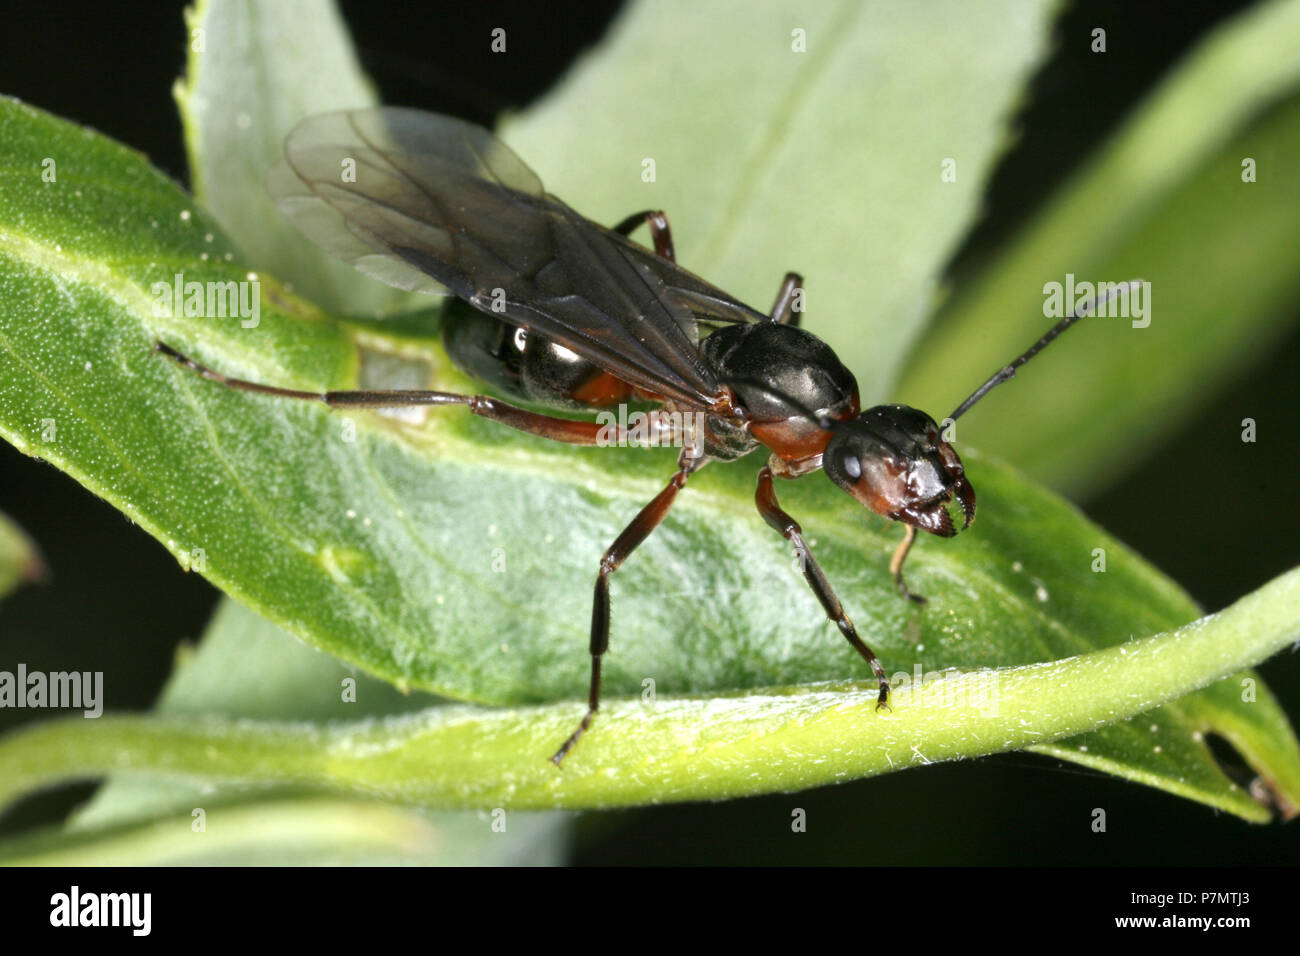 Reina de la hormiga hormiga de madera roja europea (Formica polyctena) Foto de stock